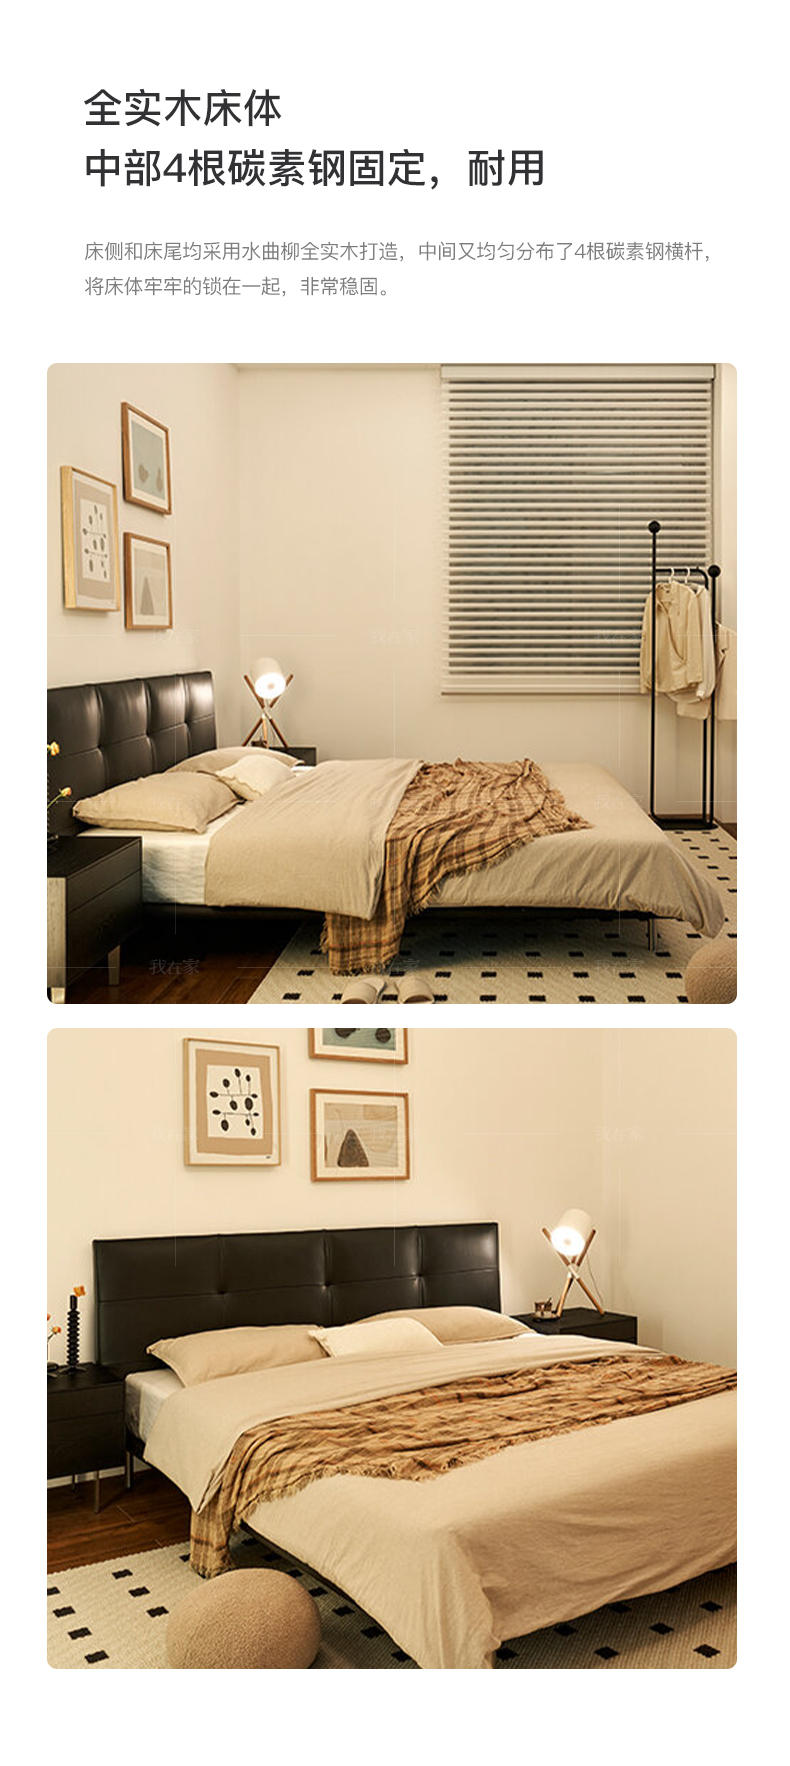 中古风风格黑巧双人床的家具详细介绍